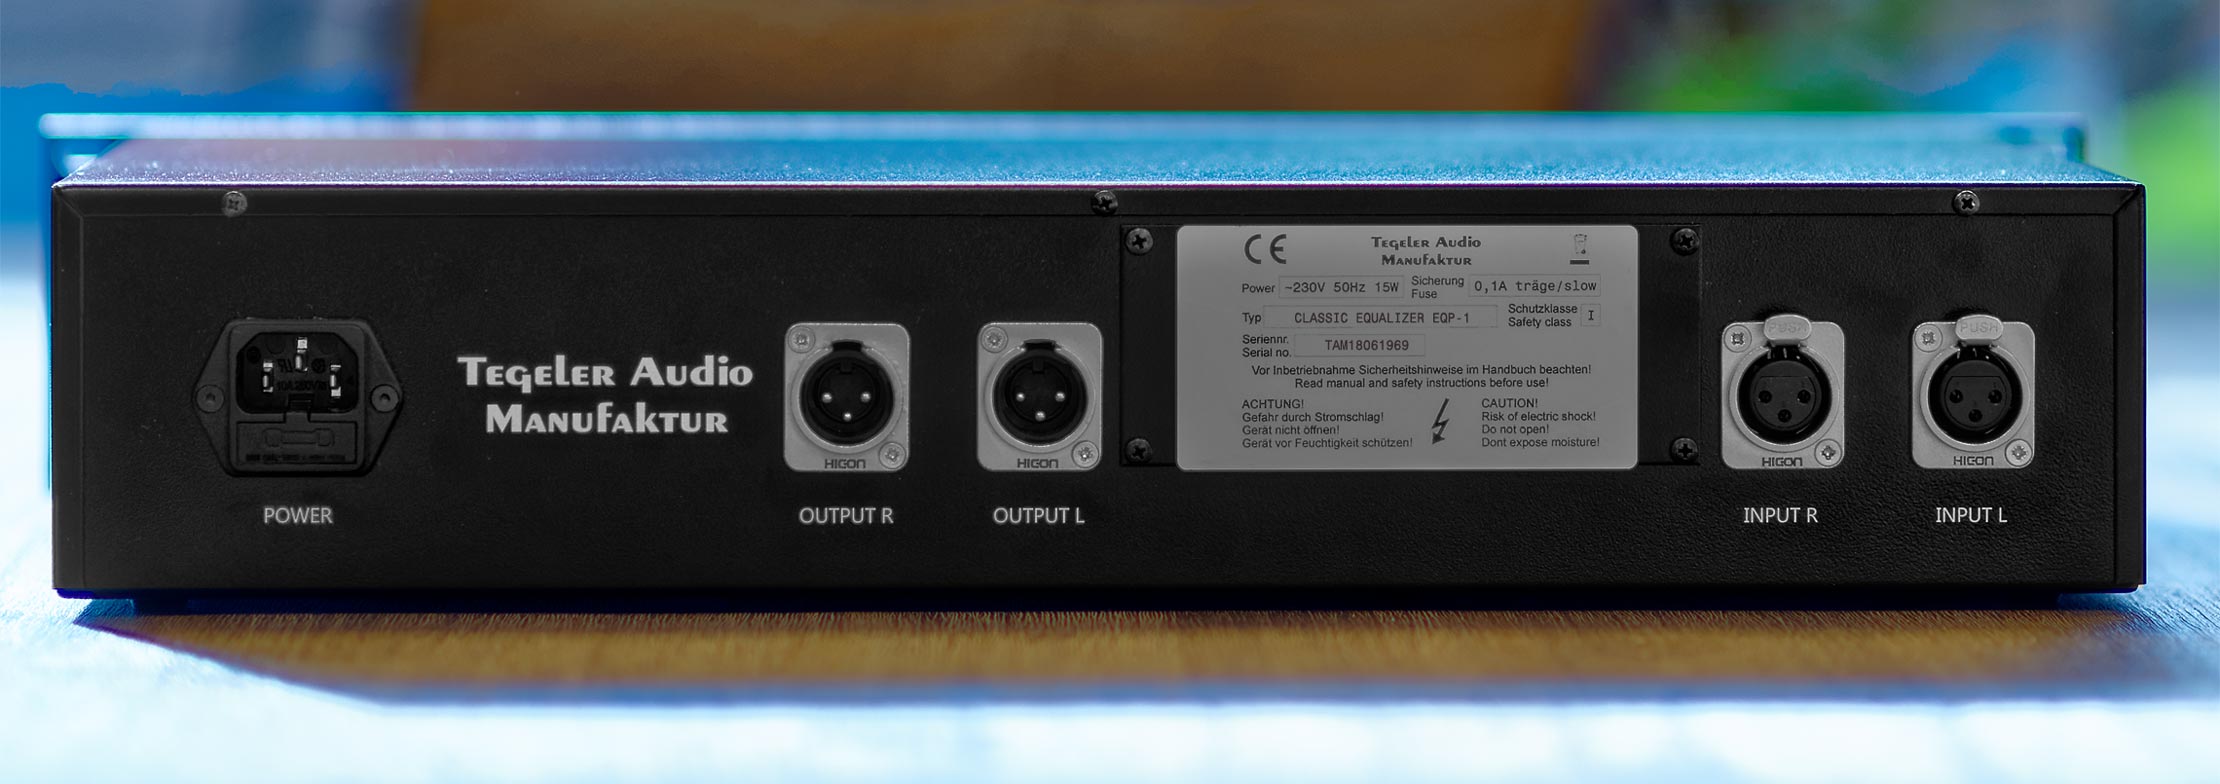 Tegeler Audio Manufaktur Eqp-1 - Equalizador / channel strip - Variation 1